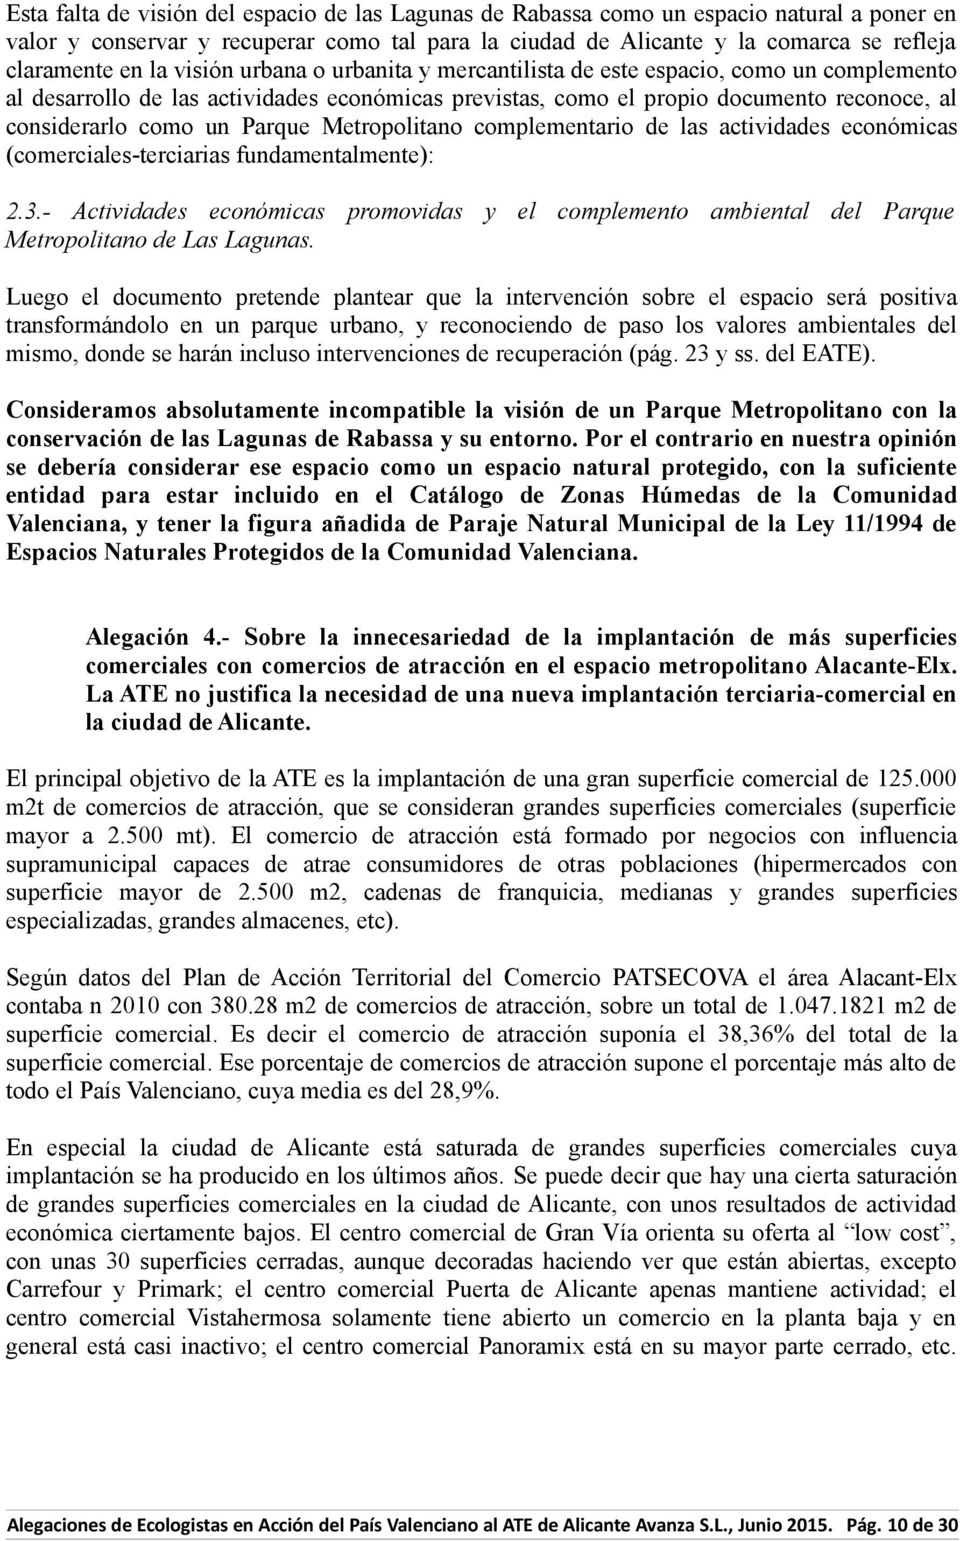 Parque Metropolitano complementario de las actividades económicas (comerciales-terciarias fundamentalmente): 2.3.